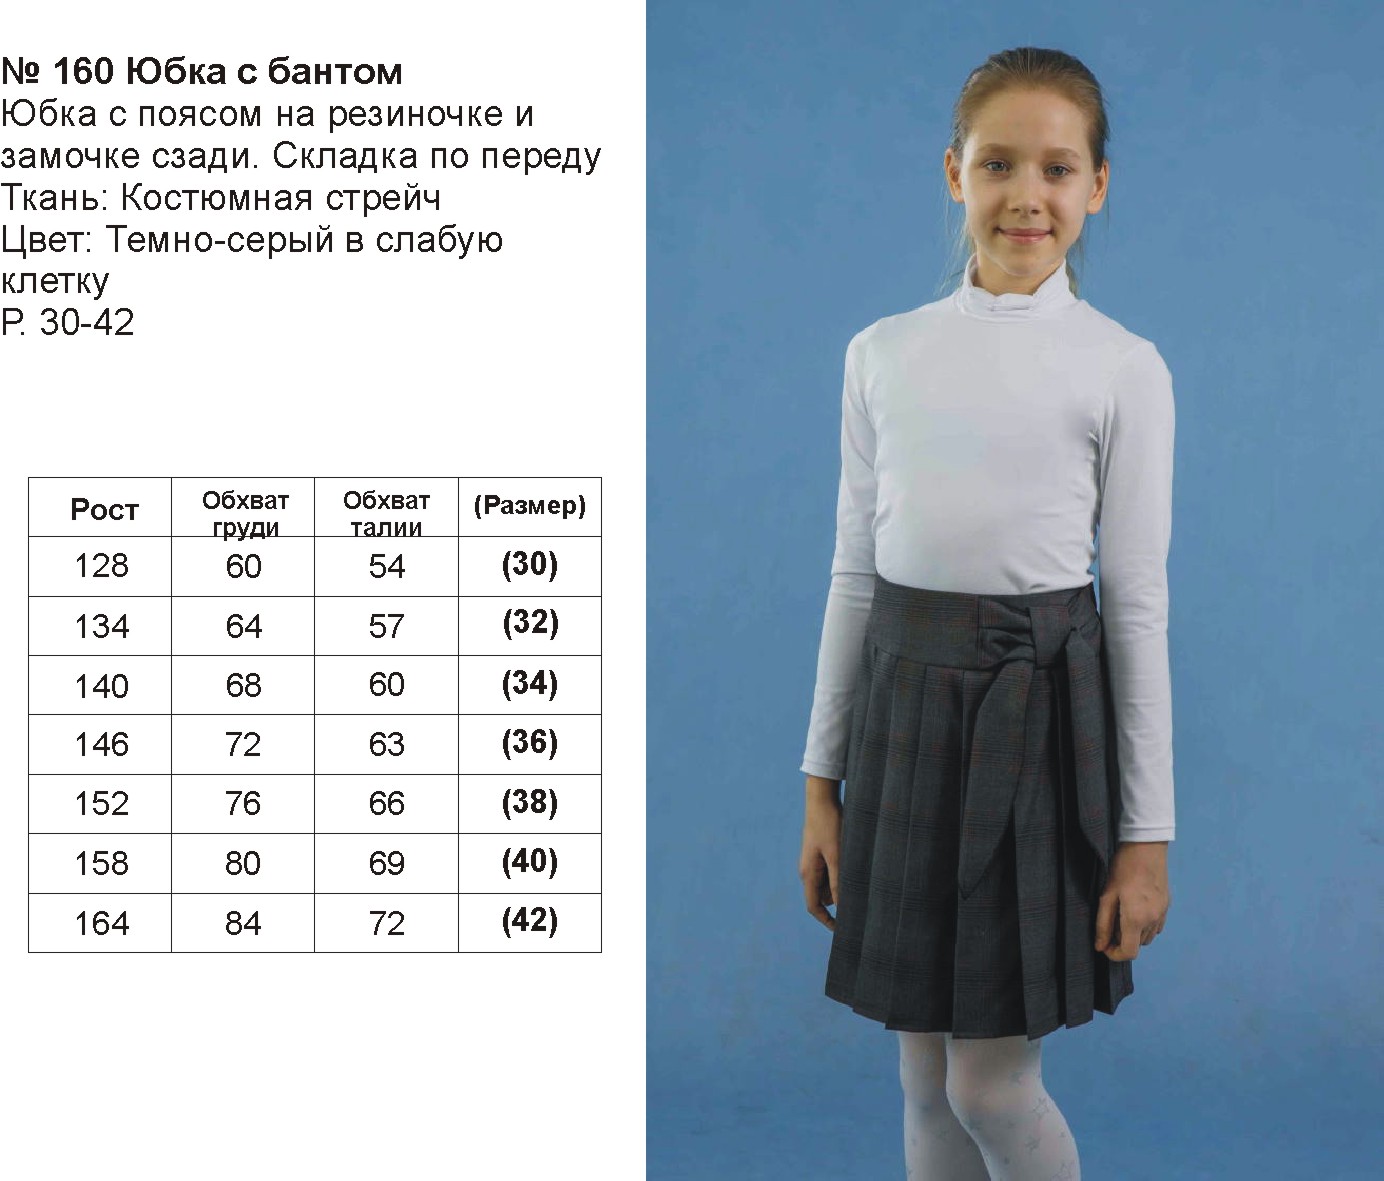 Размеры юбок для девочек